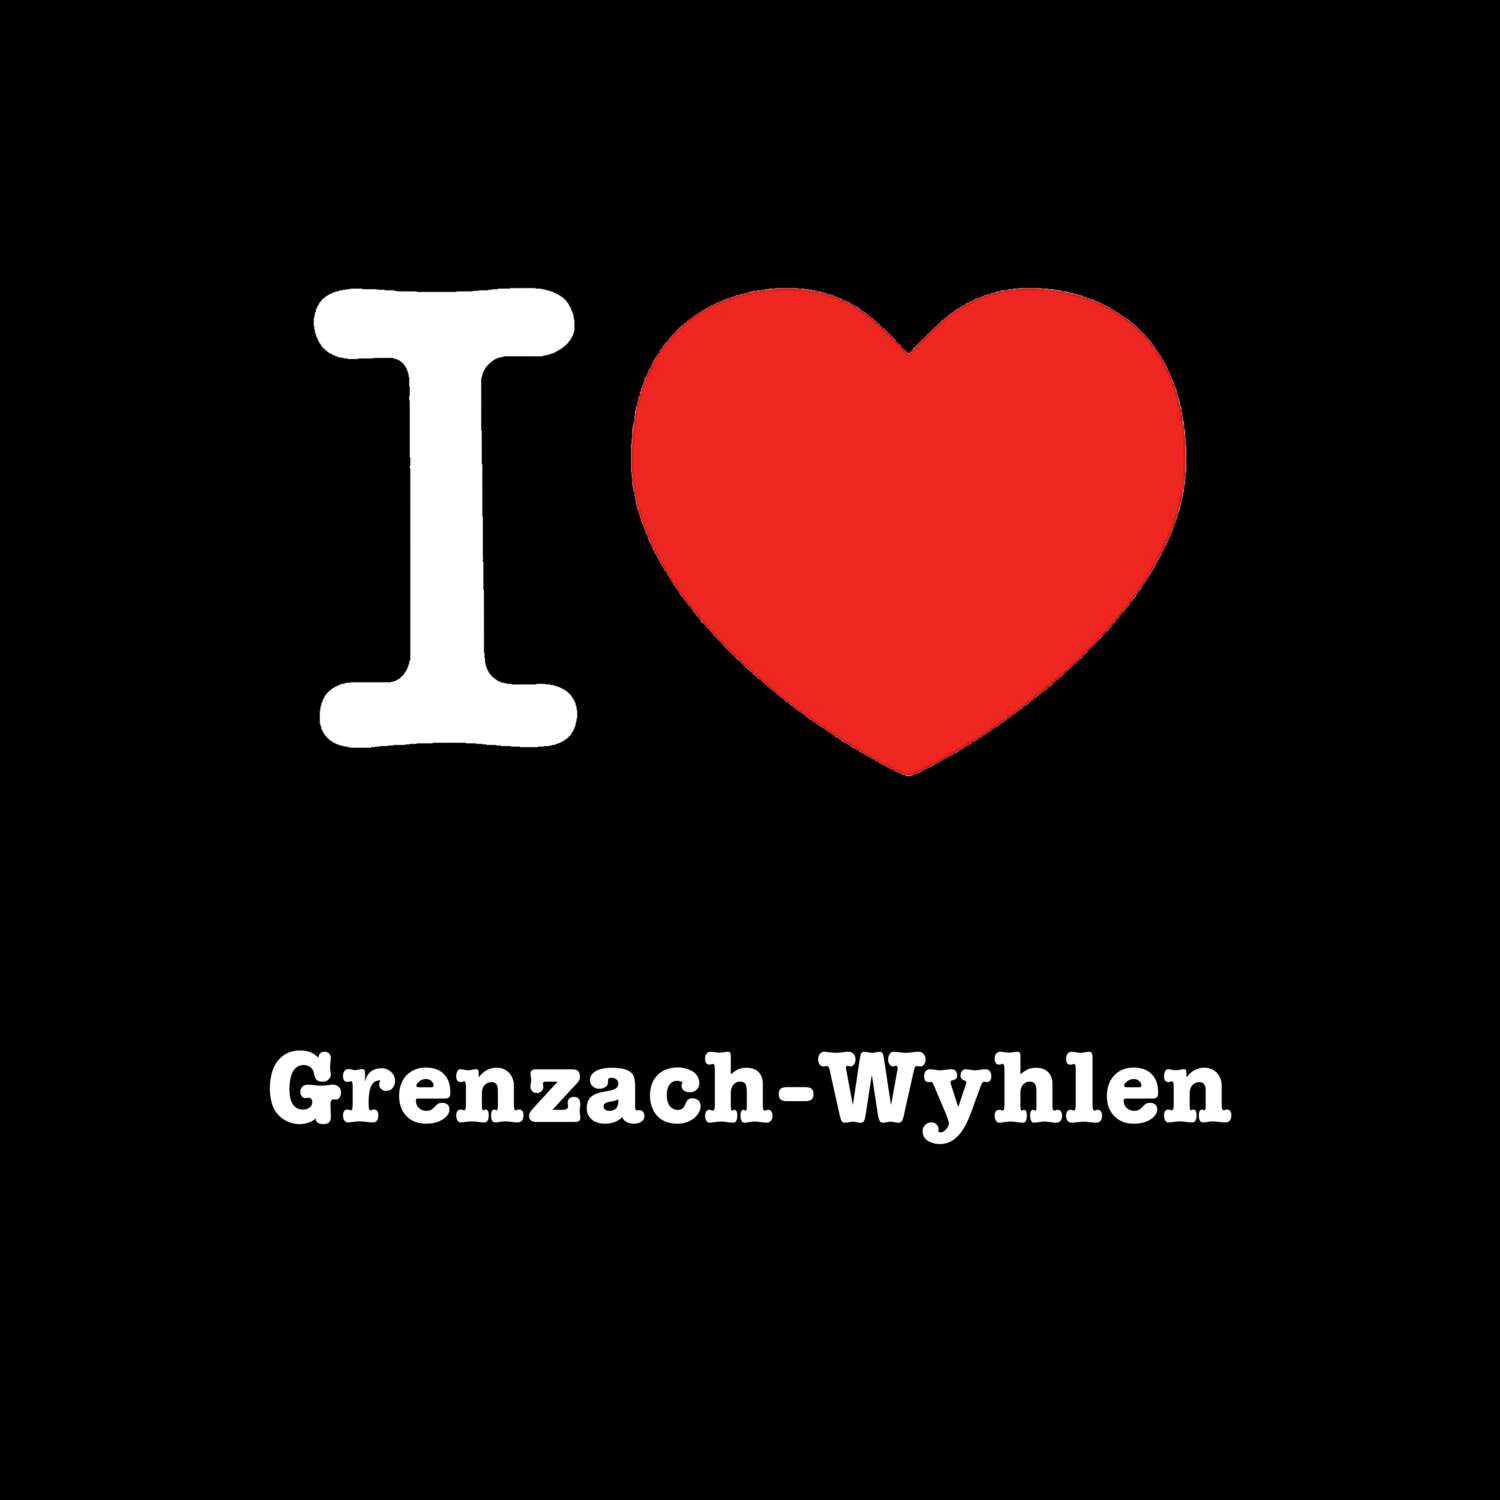 Grenzach-Wyhlen T-Shirt »I love«